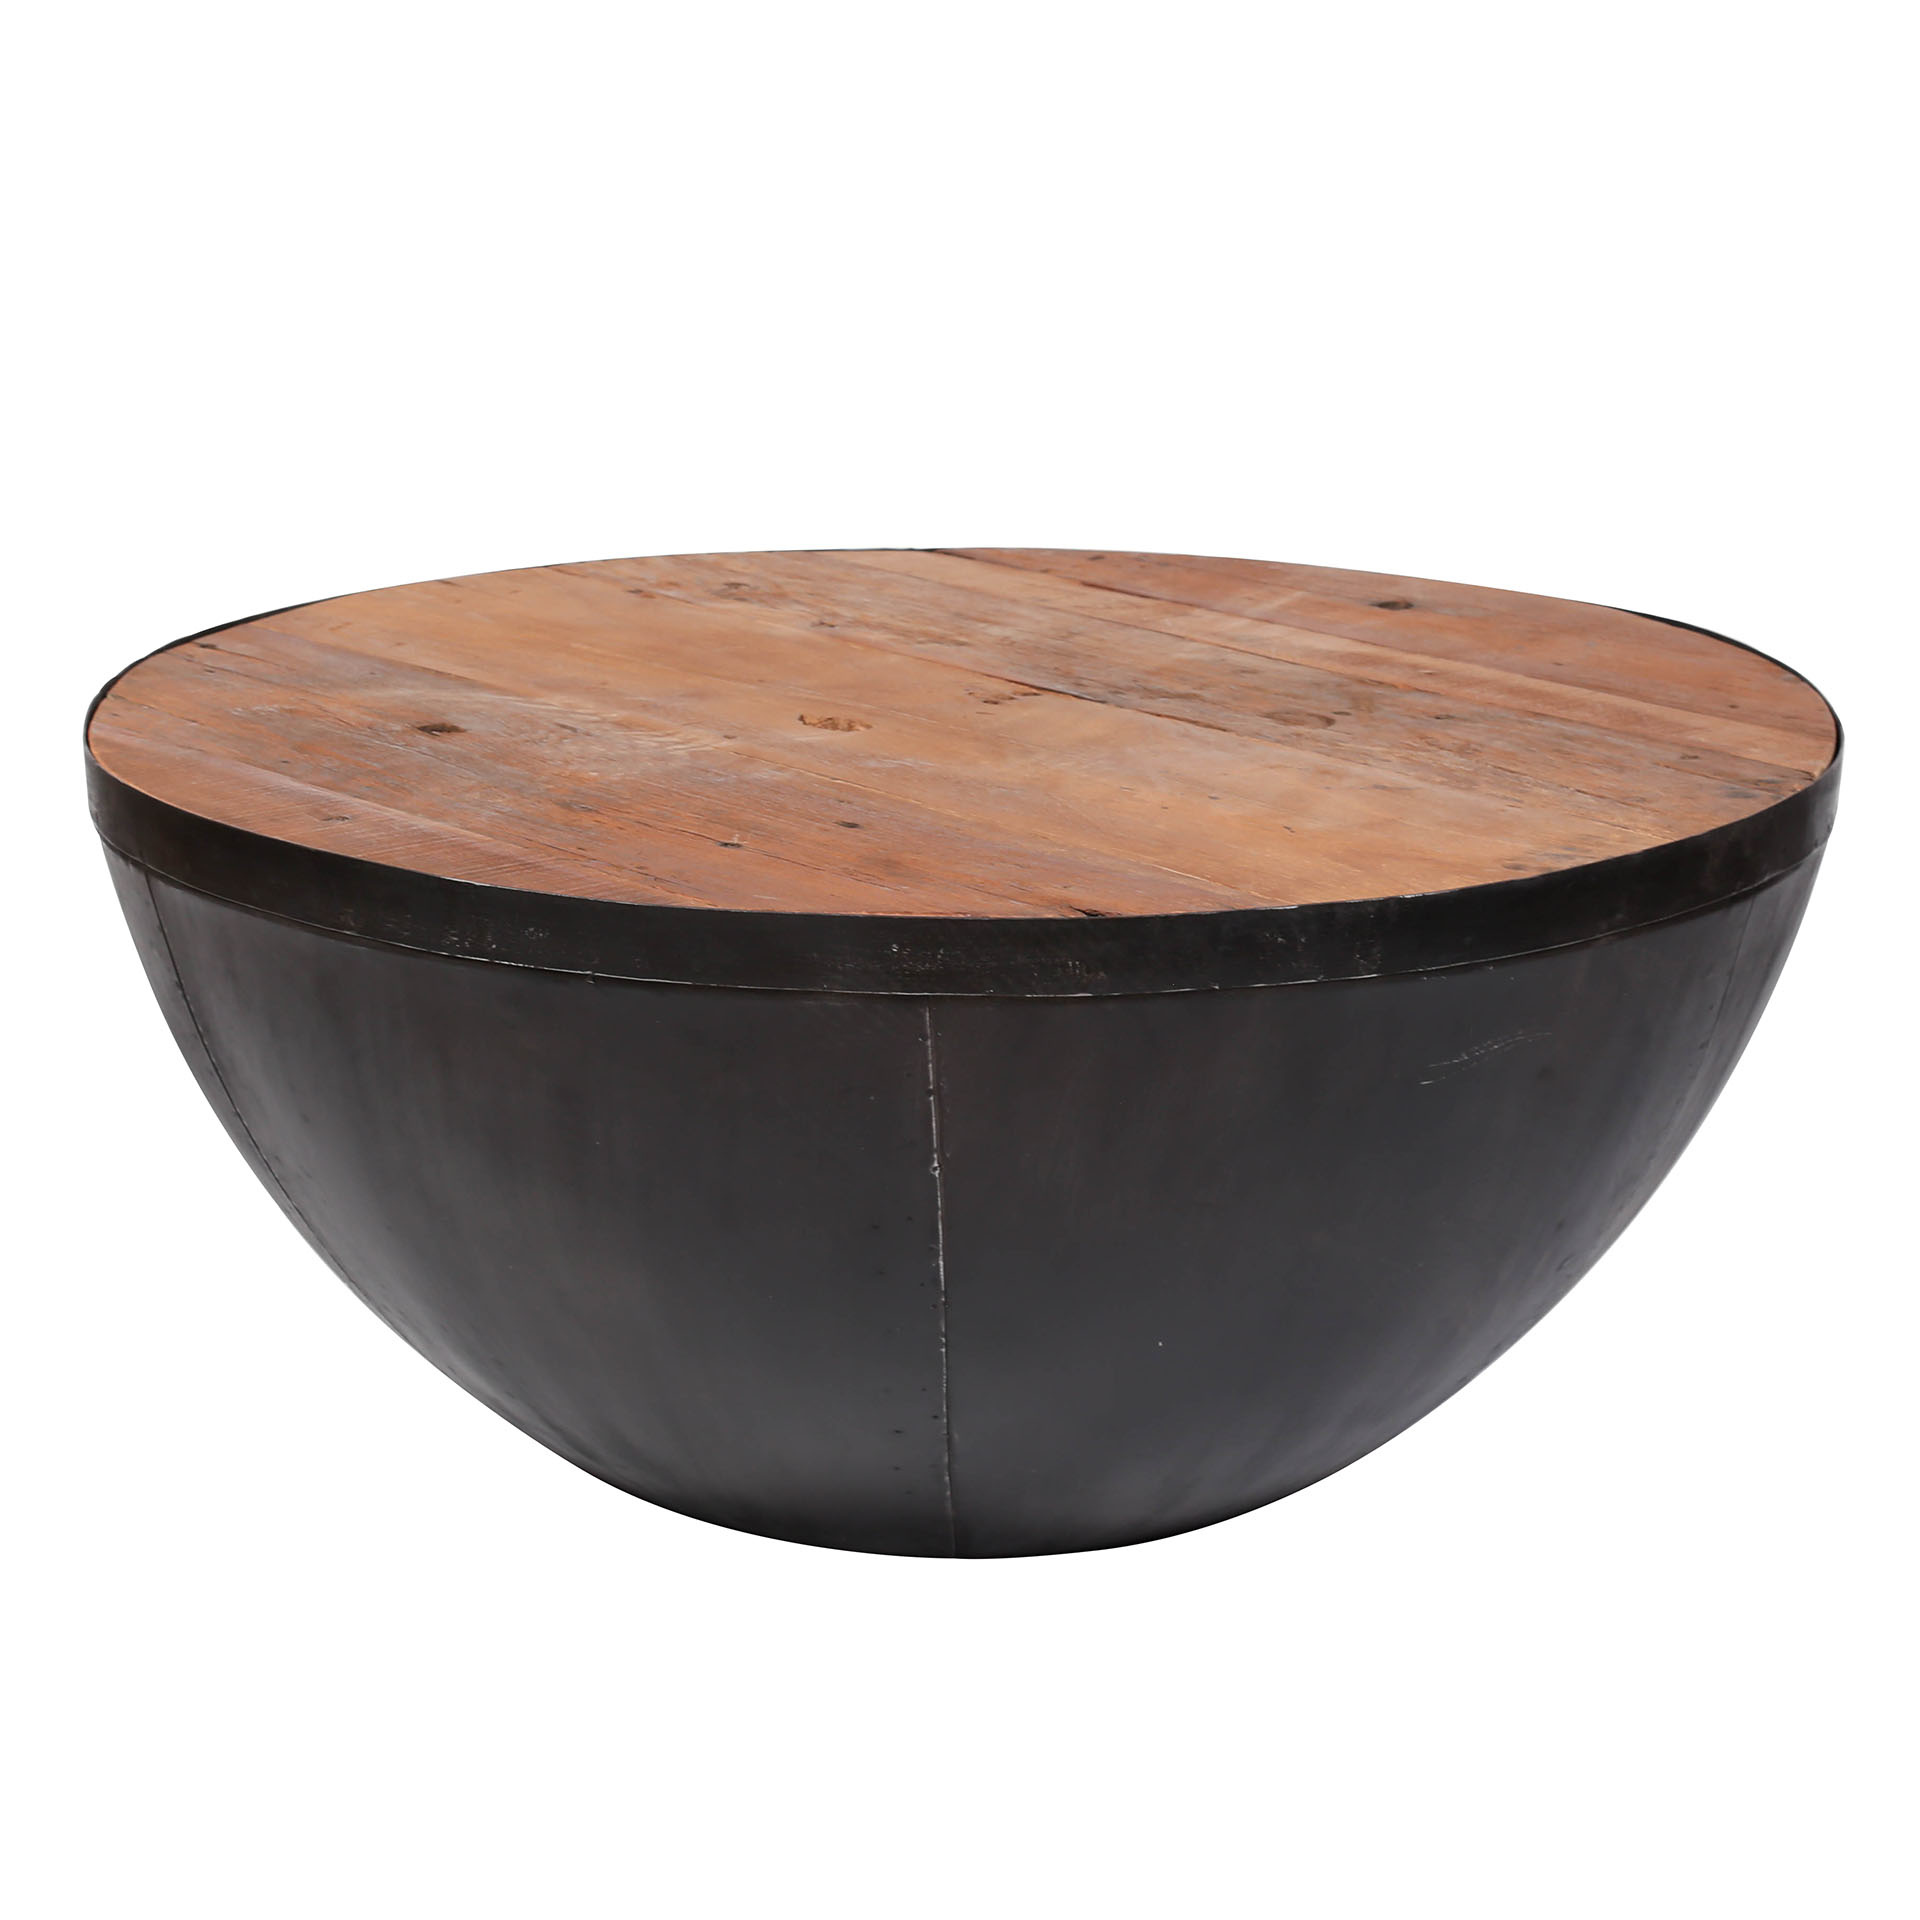 Ruf Industry - Table basse - demi-sphère - dia 90cm - bois dur robuste -  carcasse en métal - DuVerger Home